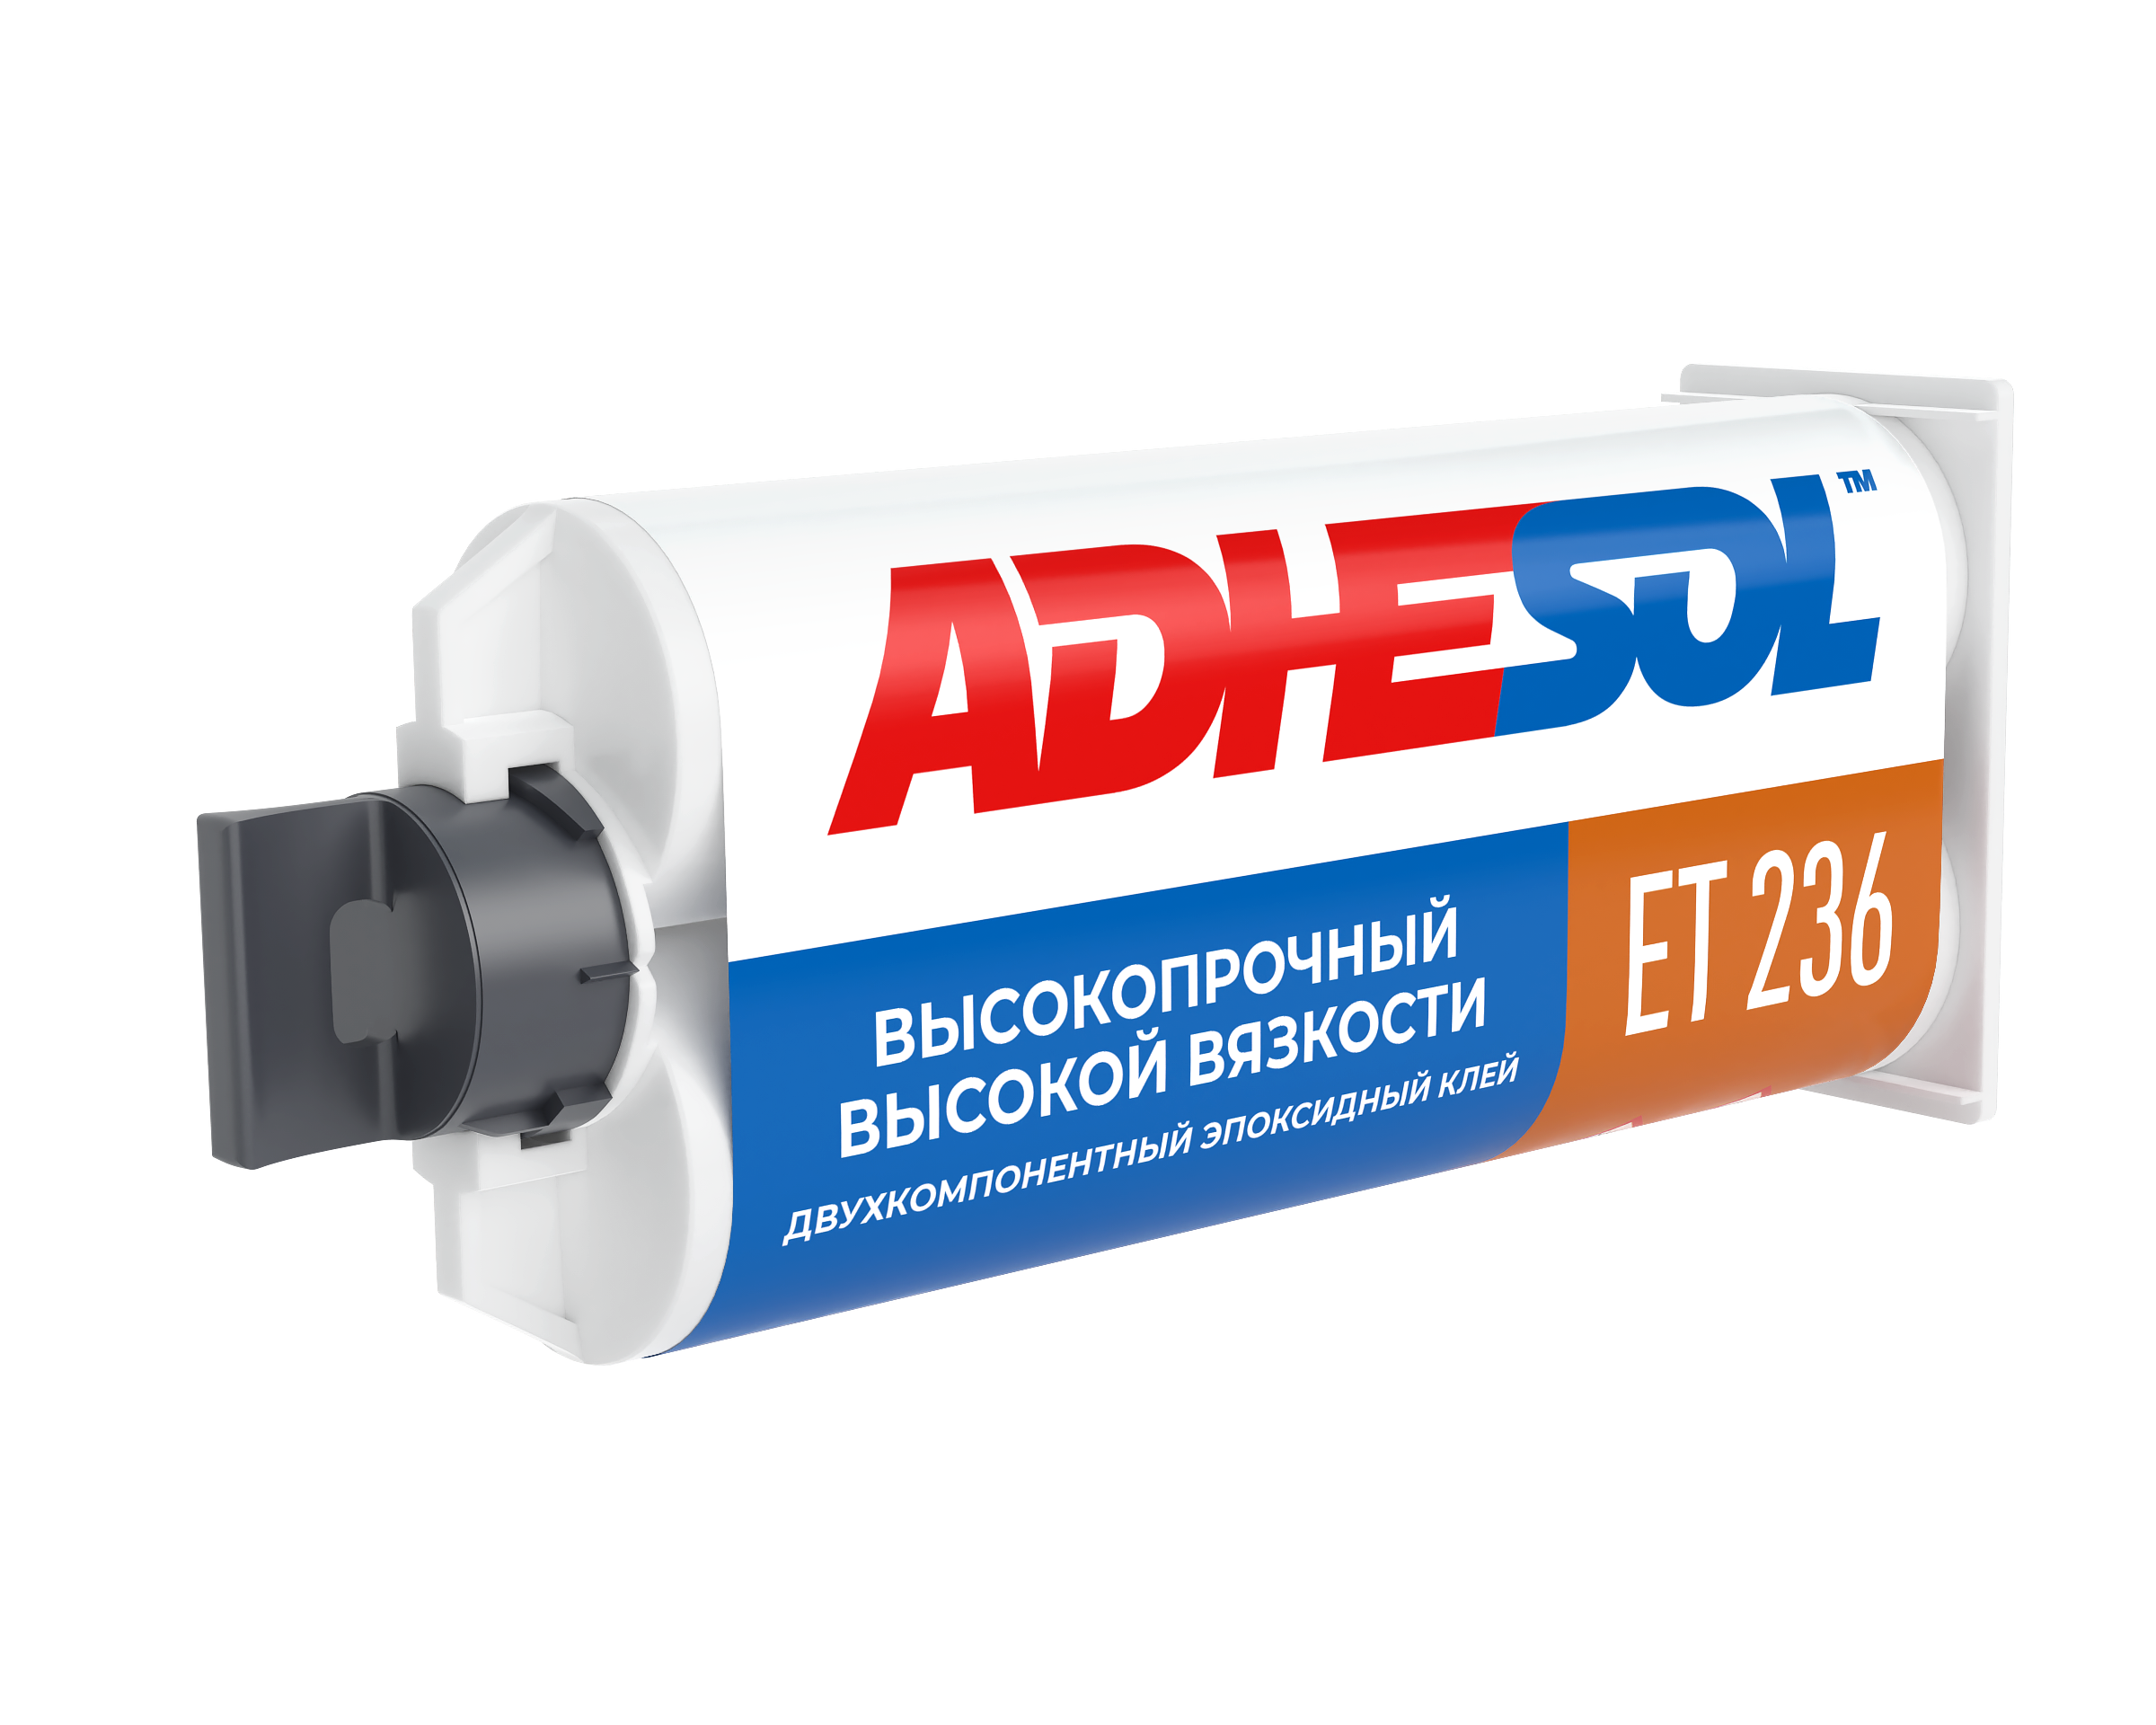 Двухкомпонентный высокопрочный тиксотропный конструкционный эпоксидный клей ADHESOL ET 236 50мл